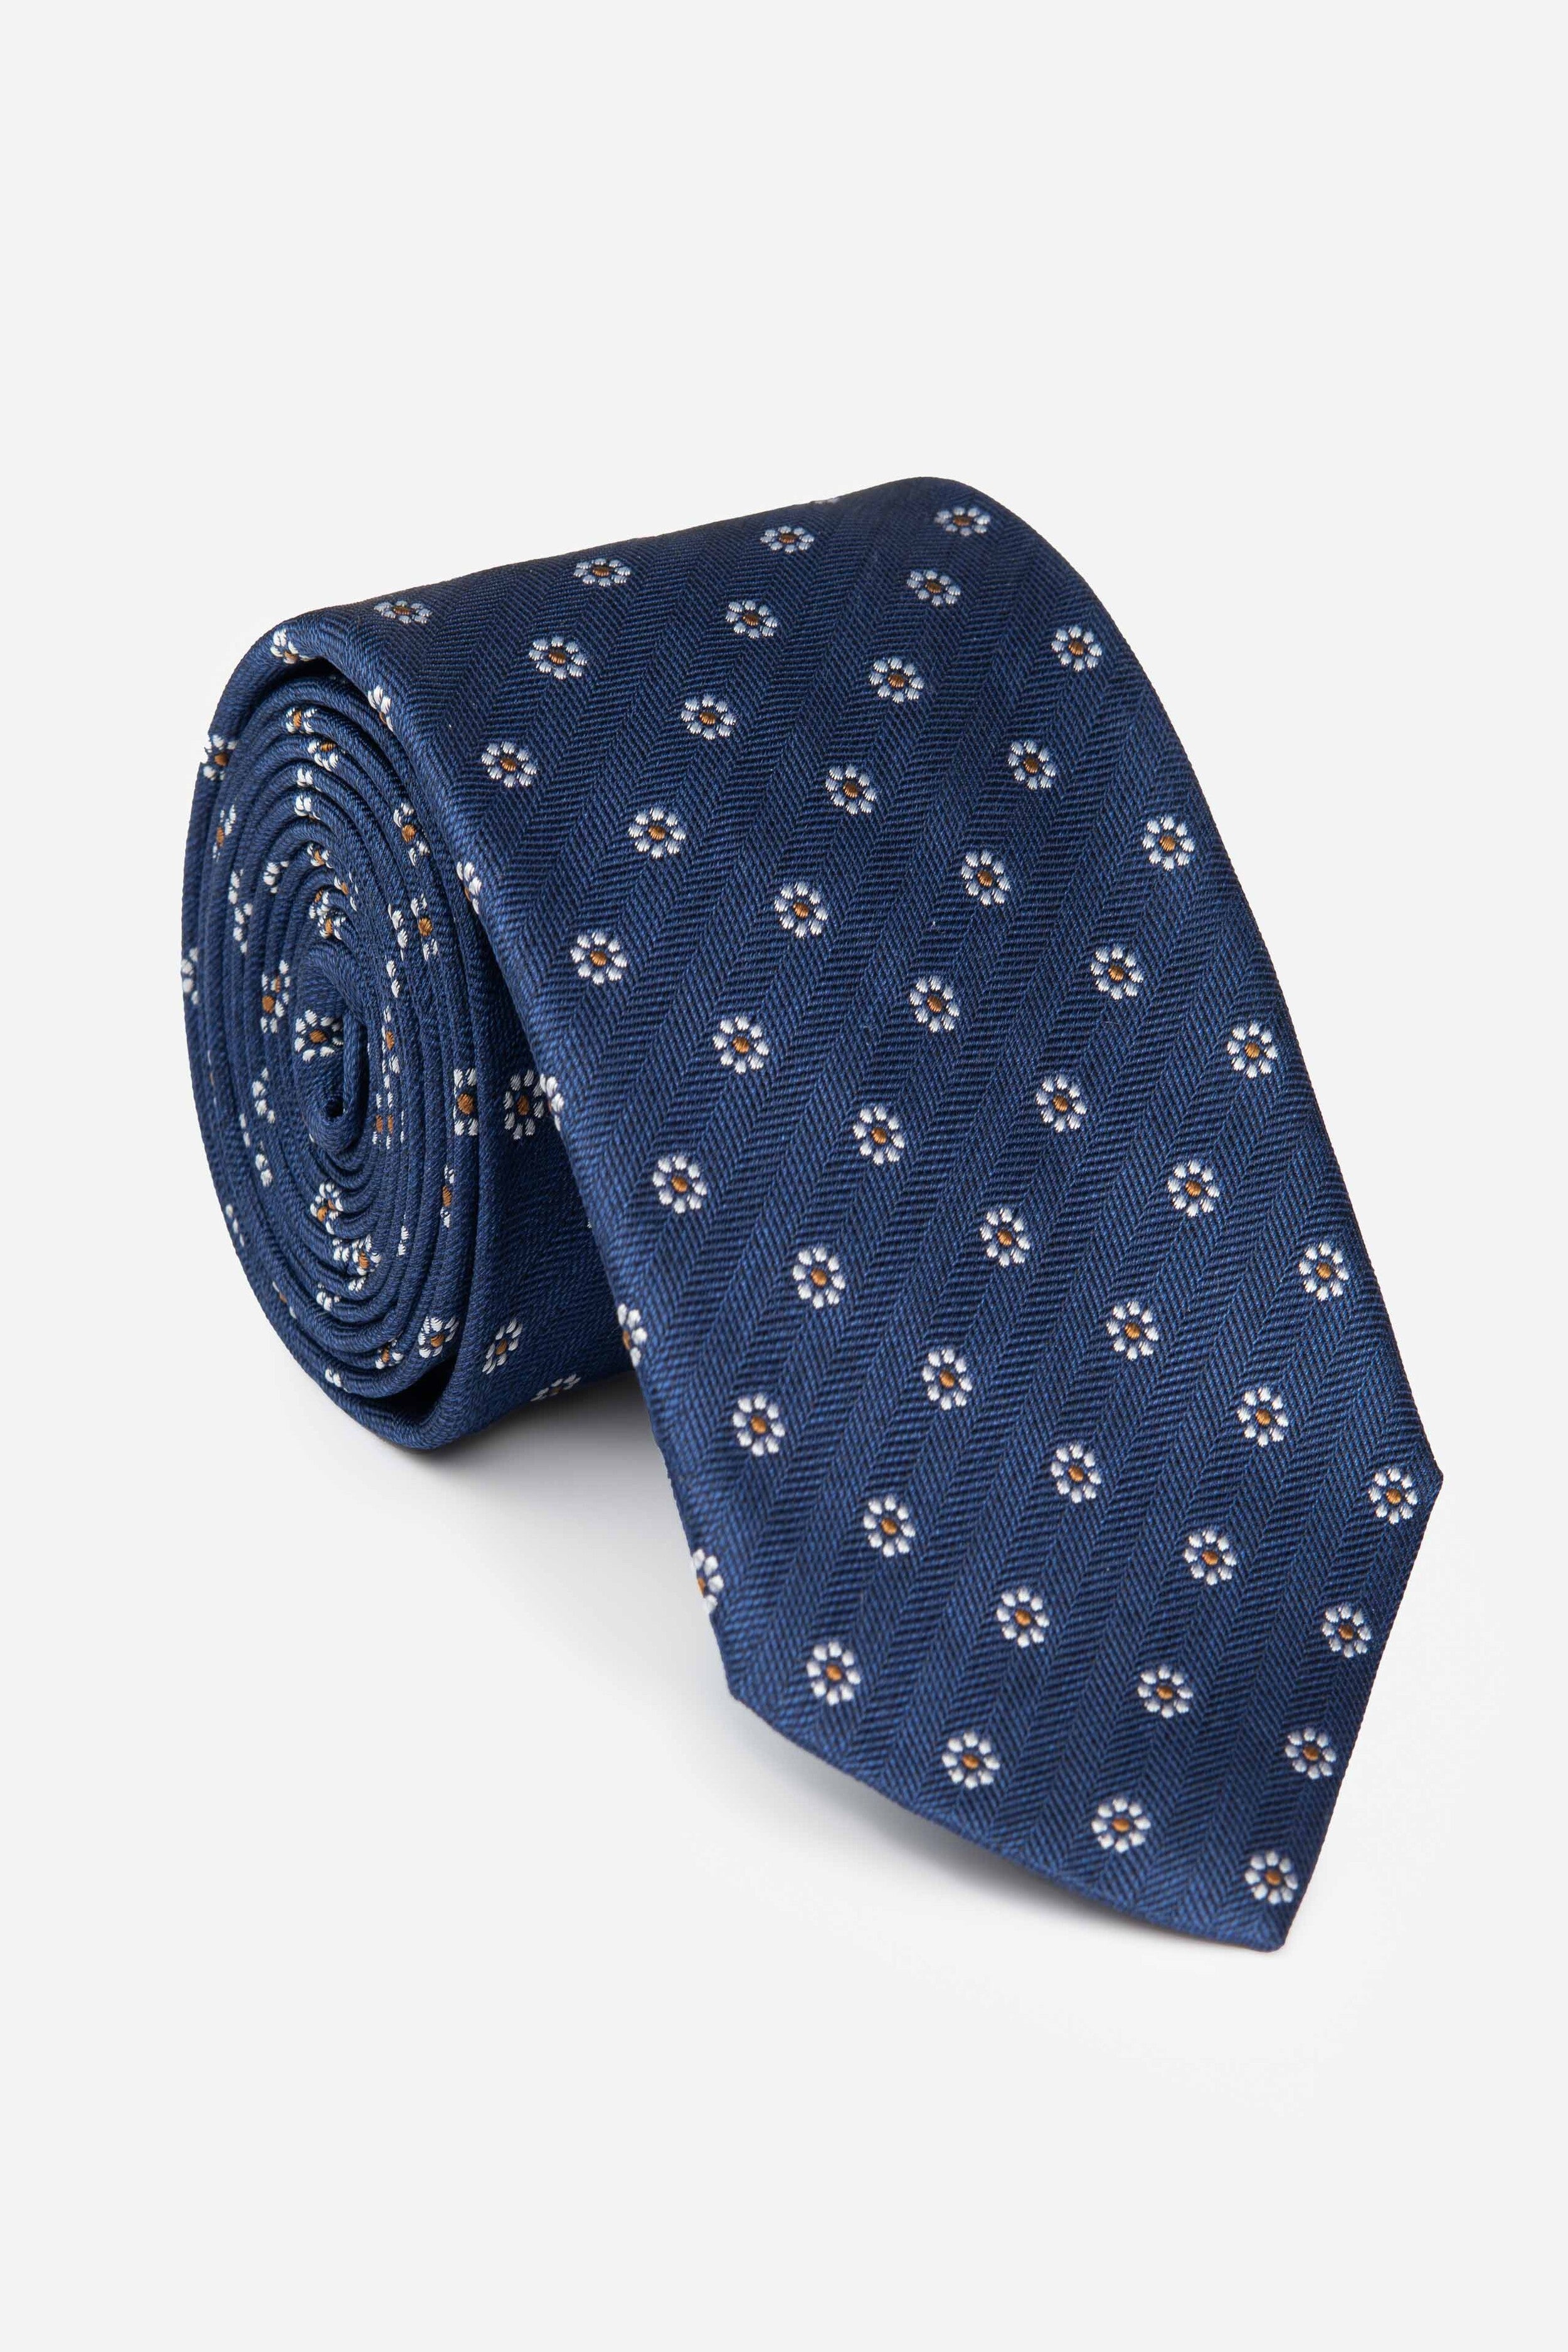 Men’s patterned tie - Blue pattern